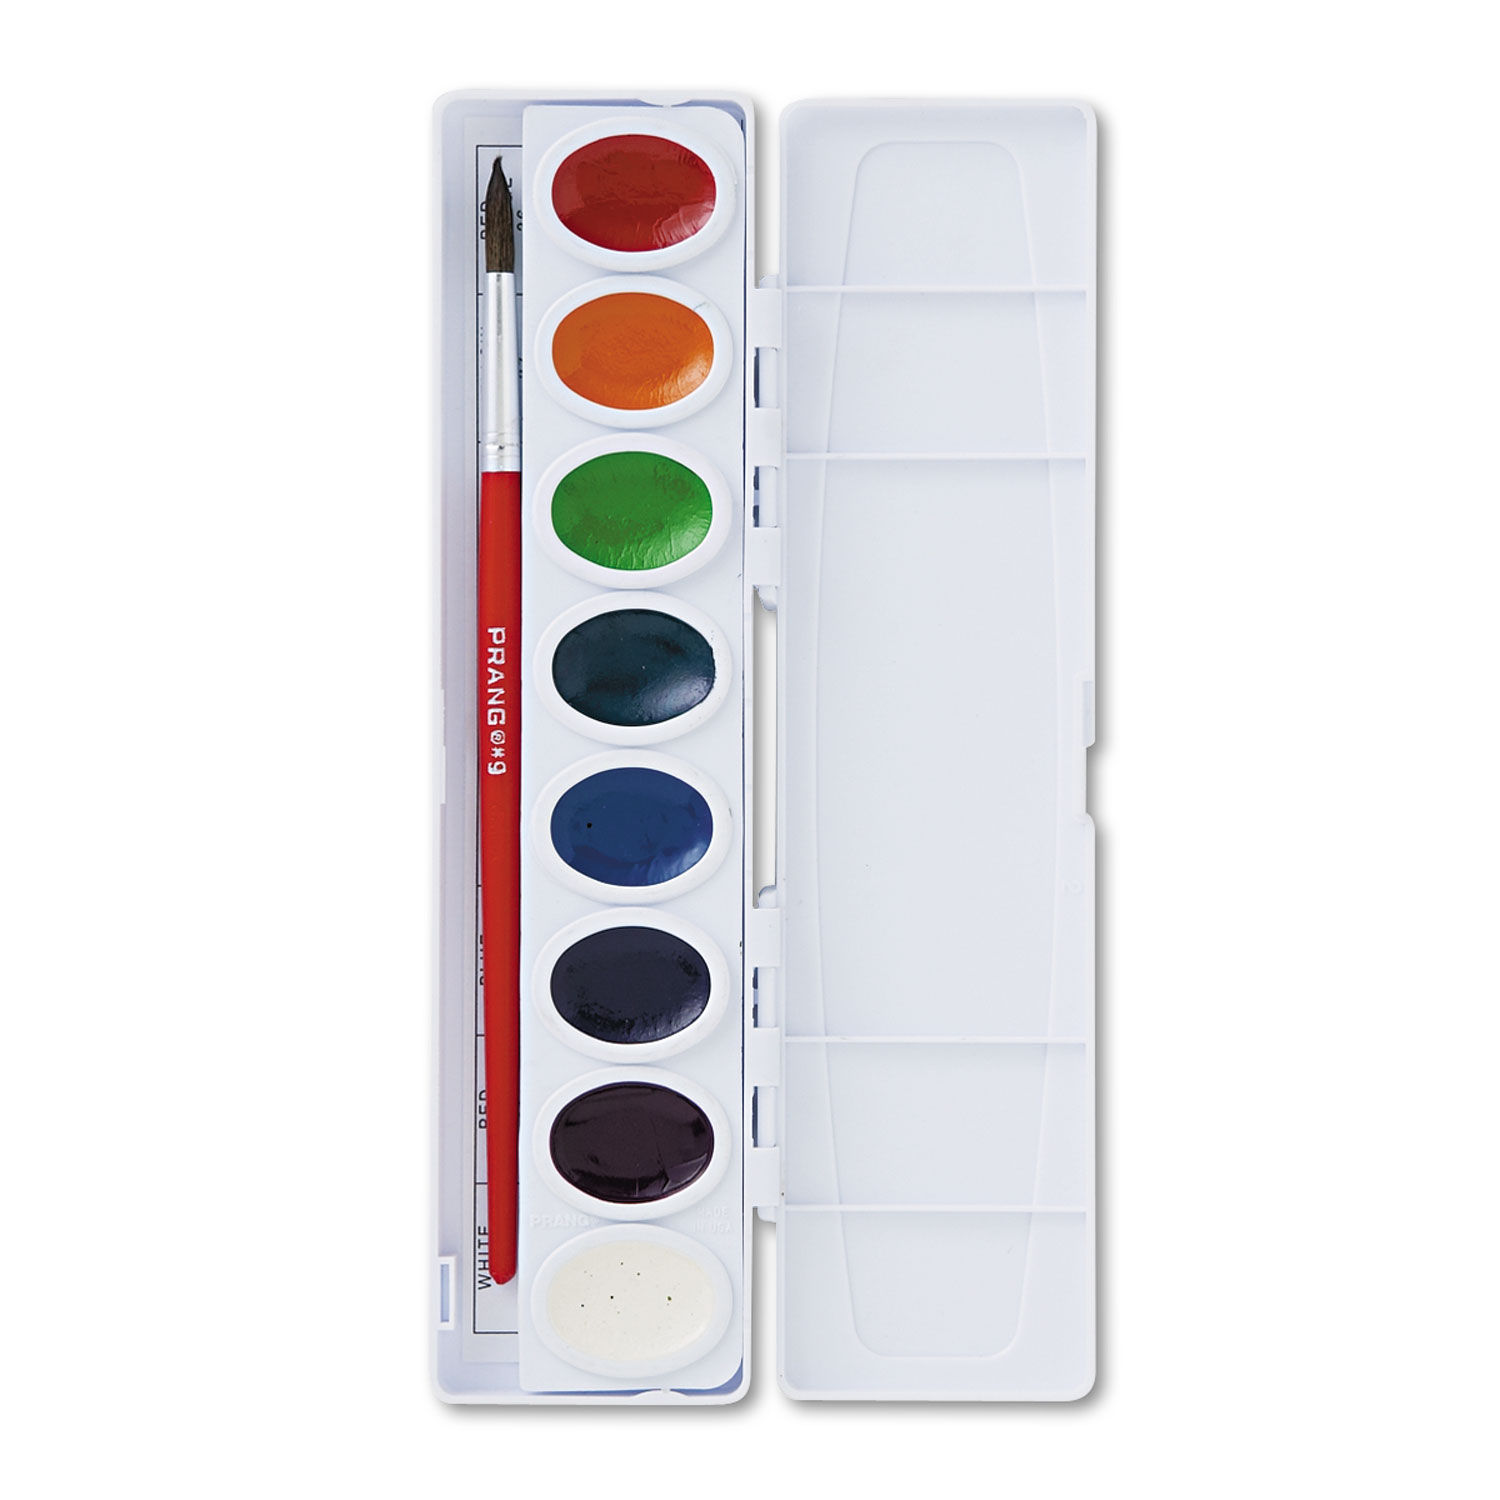 Semi-Moist Watercolor Paint Set, 8-Color Oval Pan w/Brush, 36 Sets